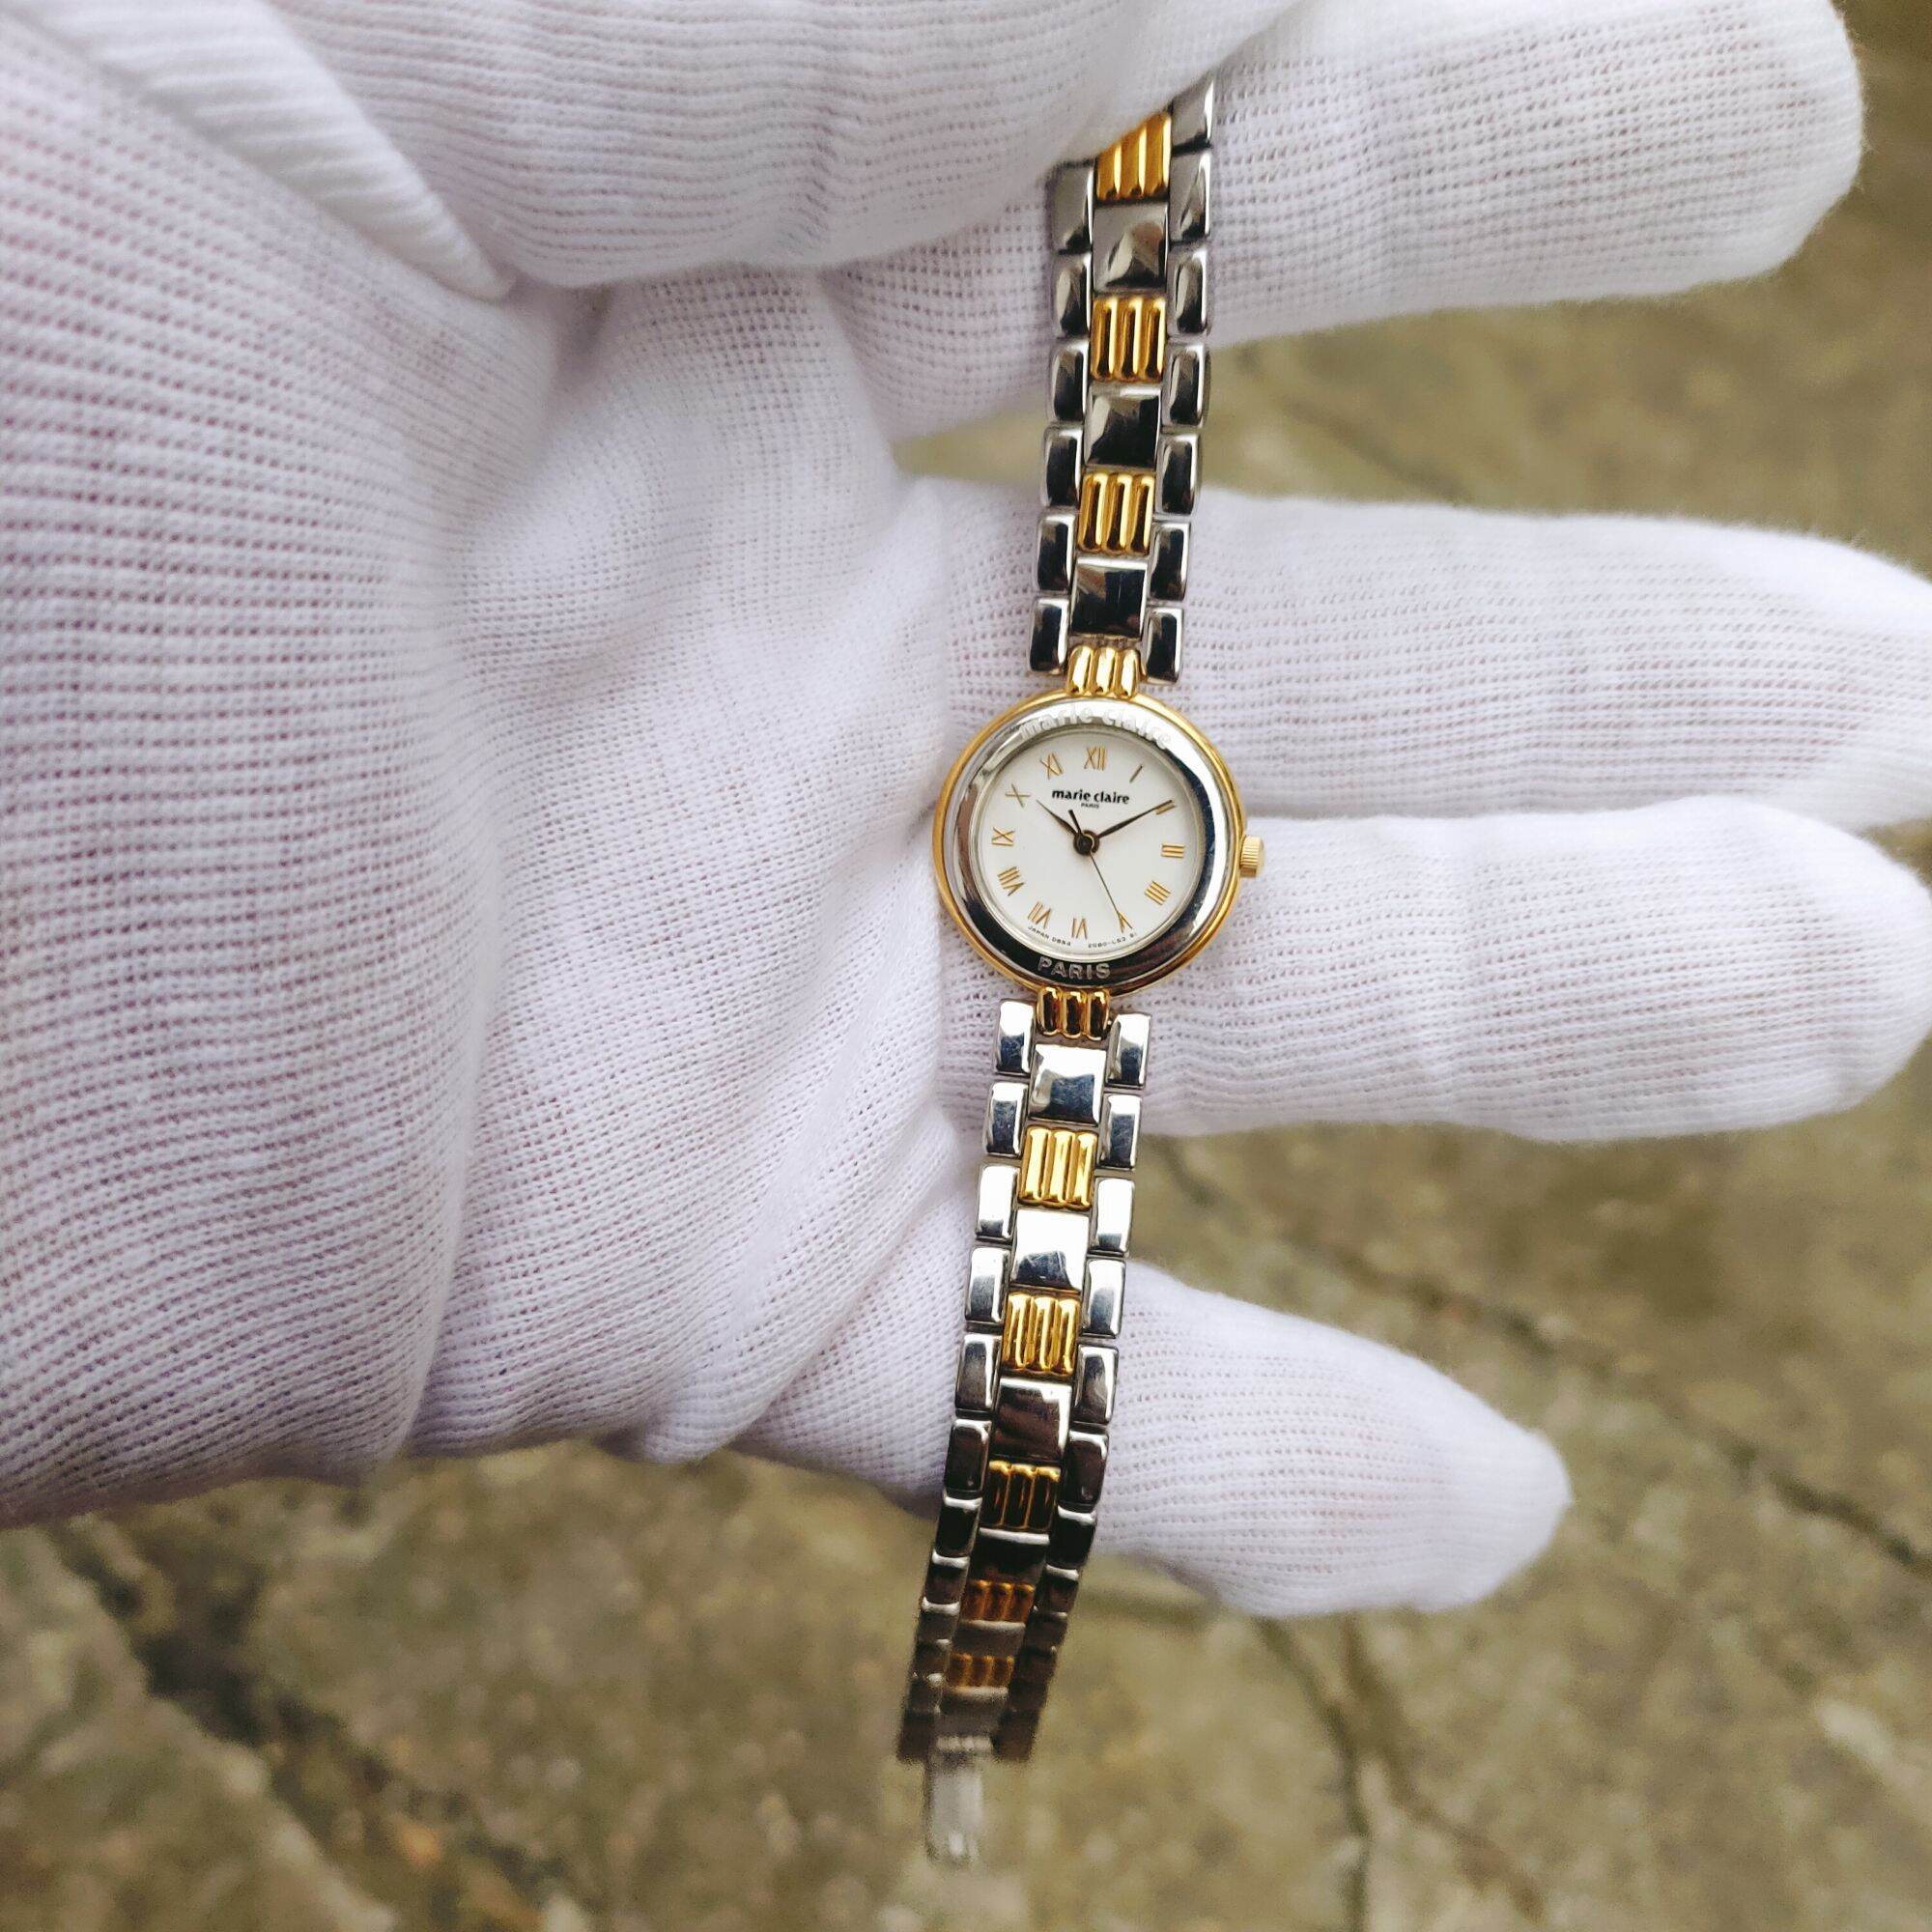 Đồng hồ nữ Marie claire Nhật Bản
,
size 22mm, Mặt cọc số la mã,
Cực đẹp độc lạ, 
Mới 98%